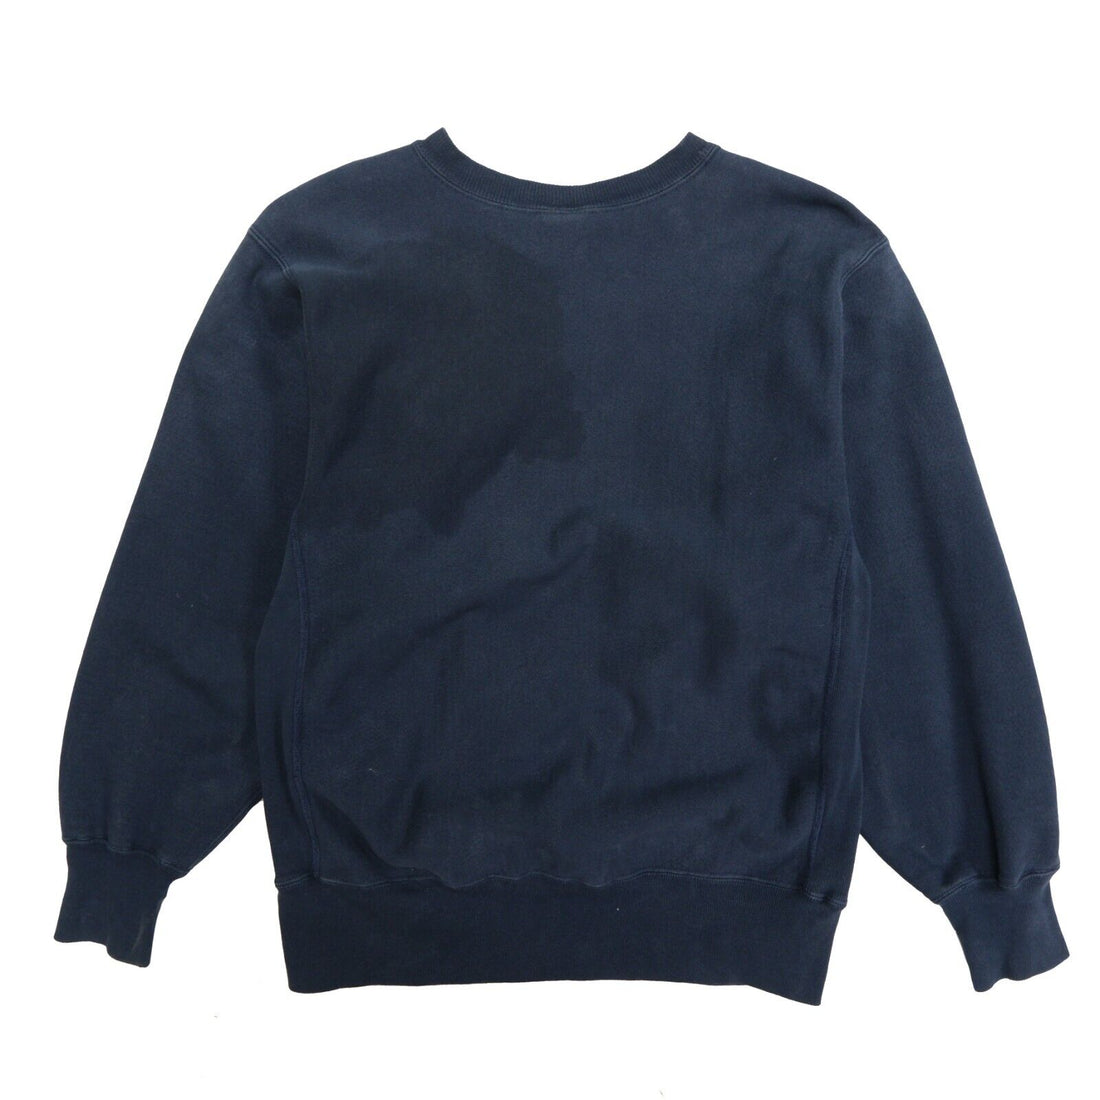 Vintage Champion Reverse Weave Sweatshirt Crewneck Size Large Blue 90s